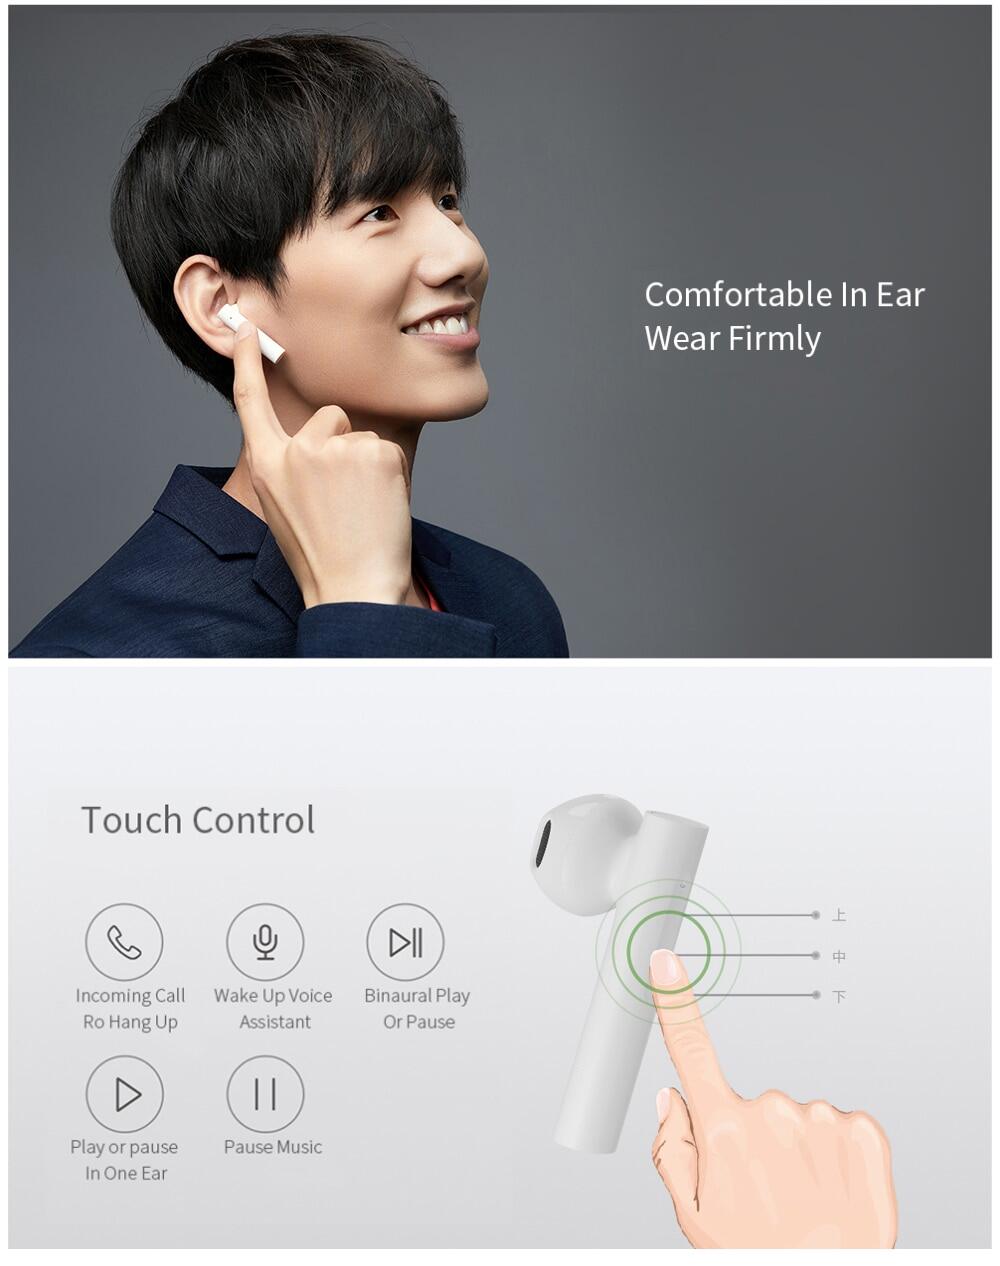 Xiaomi Tai Nghe Air2 SE Phiên Bản TWS Mi True Wireless Bluetooth 5.0 Basic Air